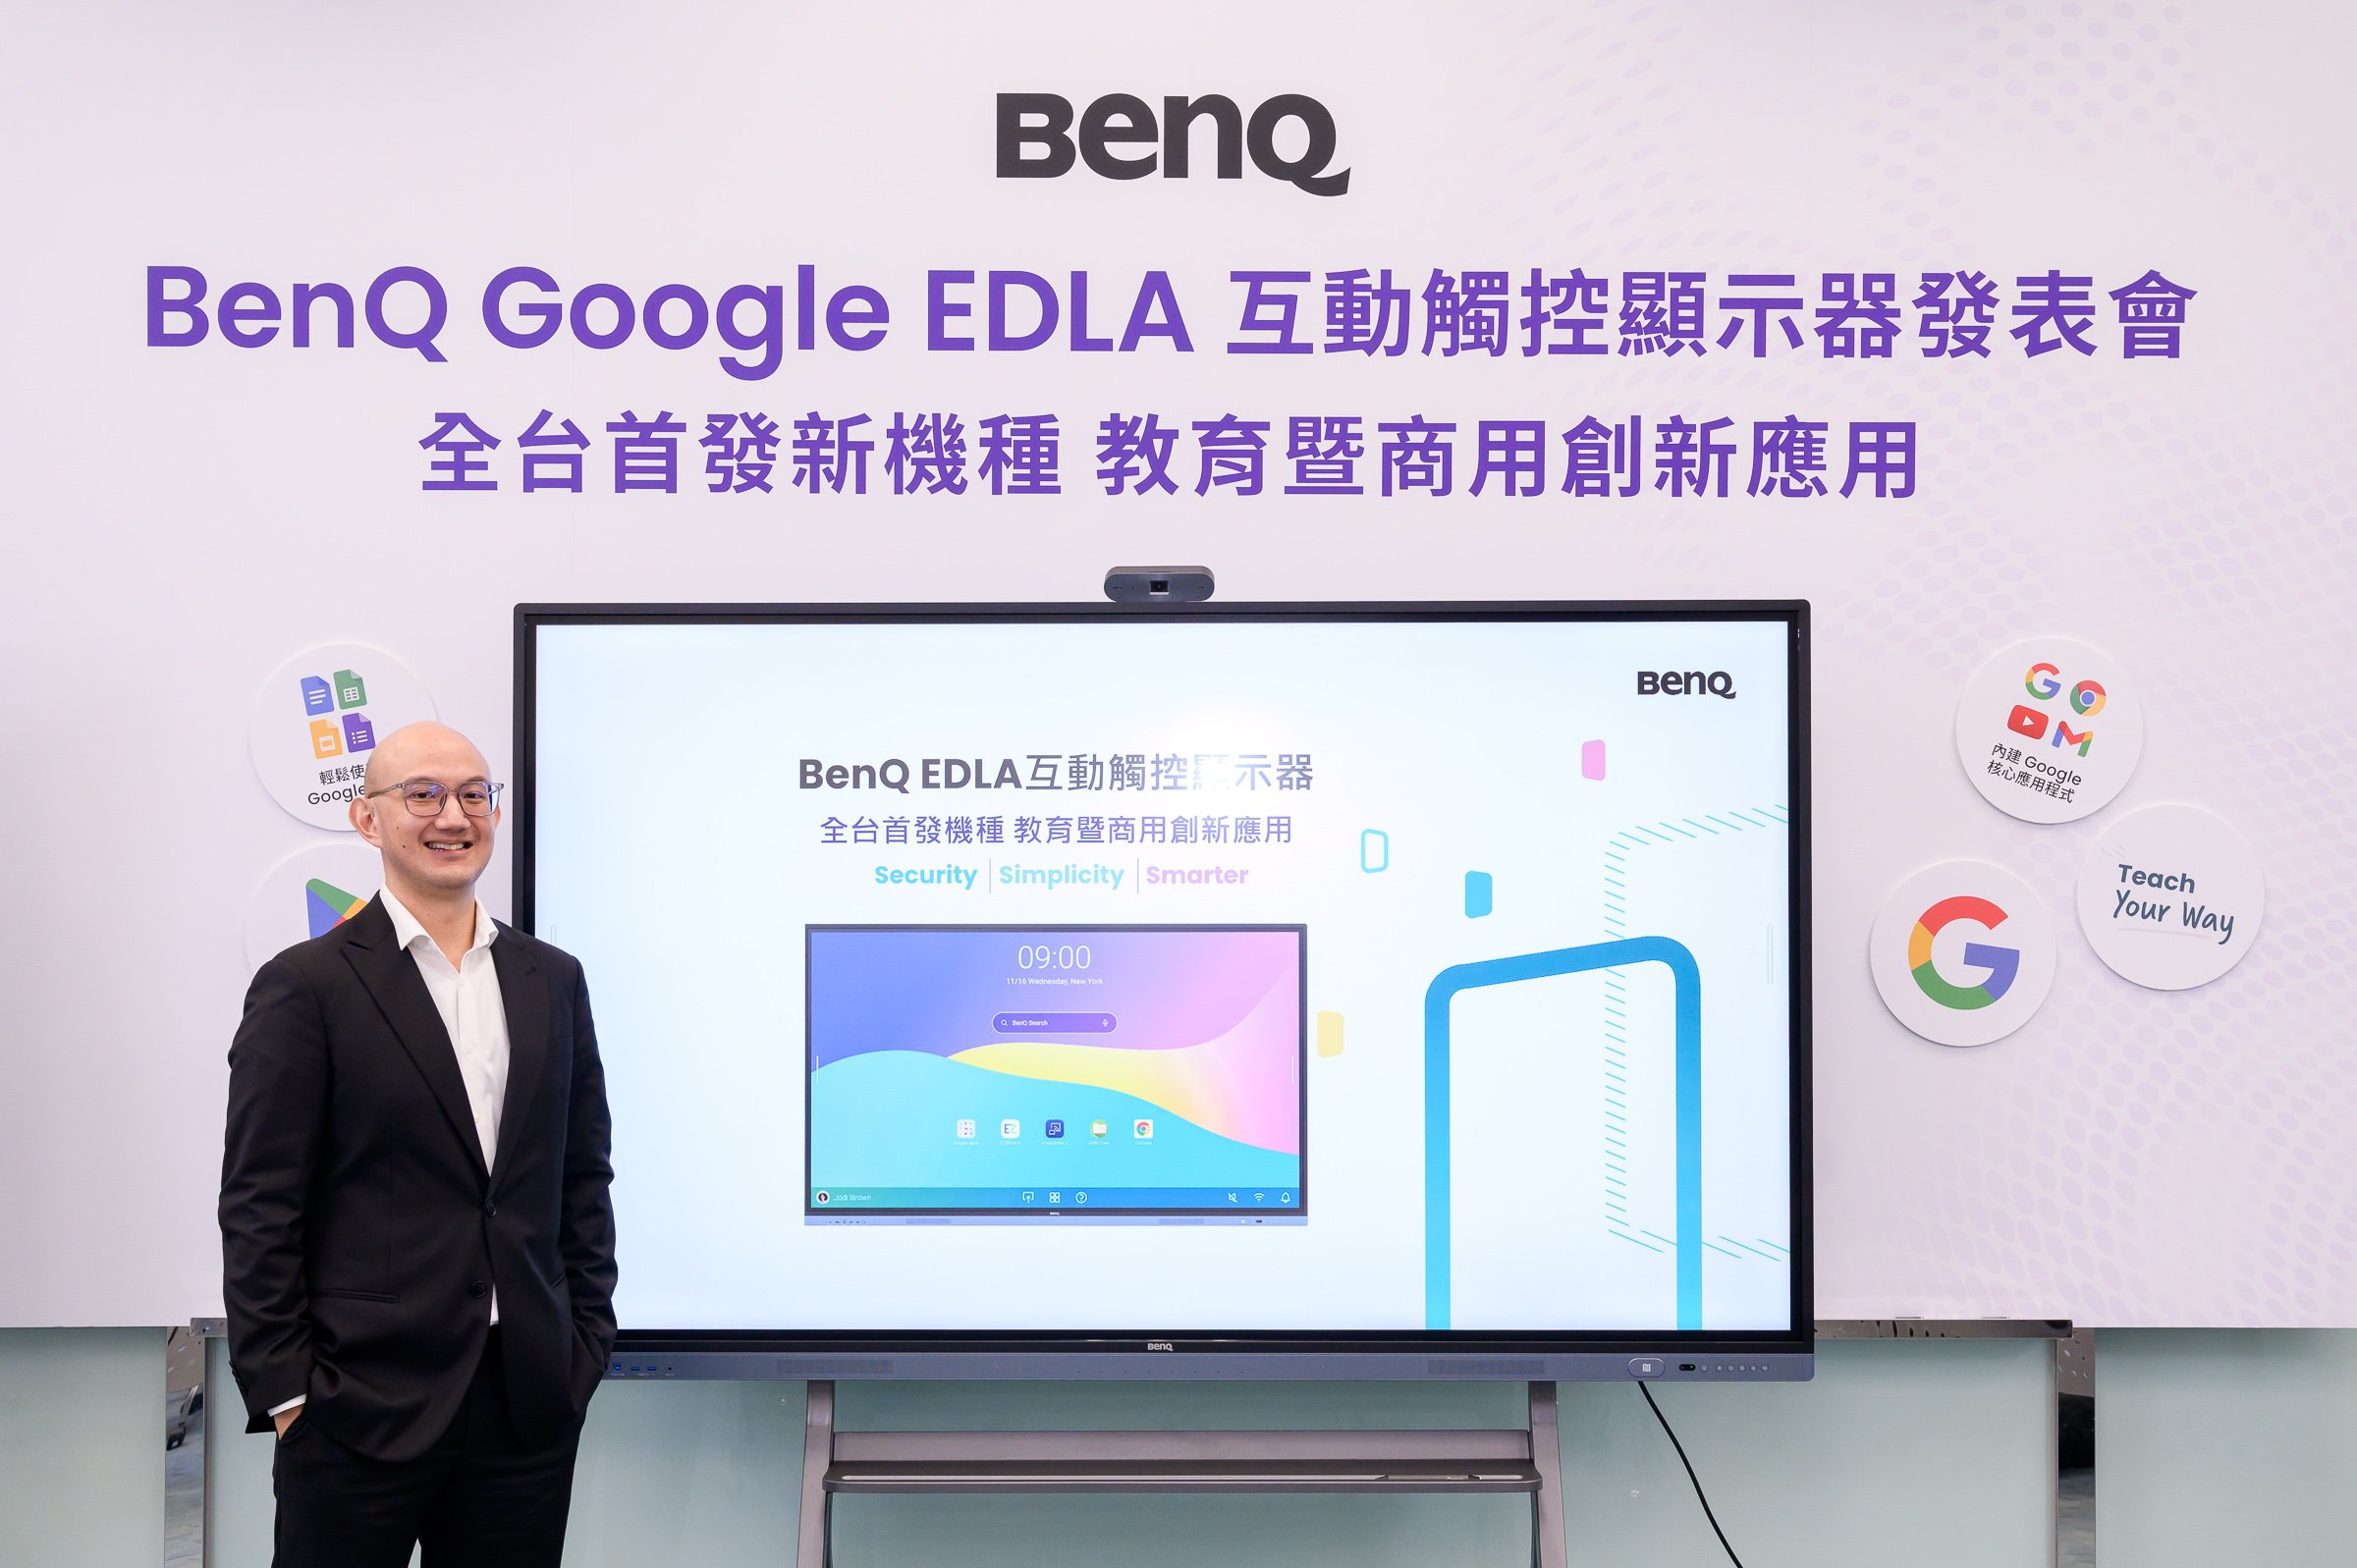 全台首發 BenQ EDLA 認證互動觸控顯示器 RM04 內建 Google 服務打造全新數位教育暨會議體驗